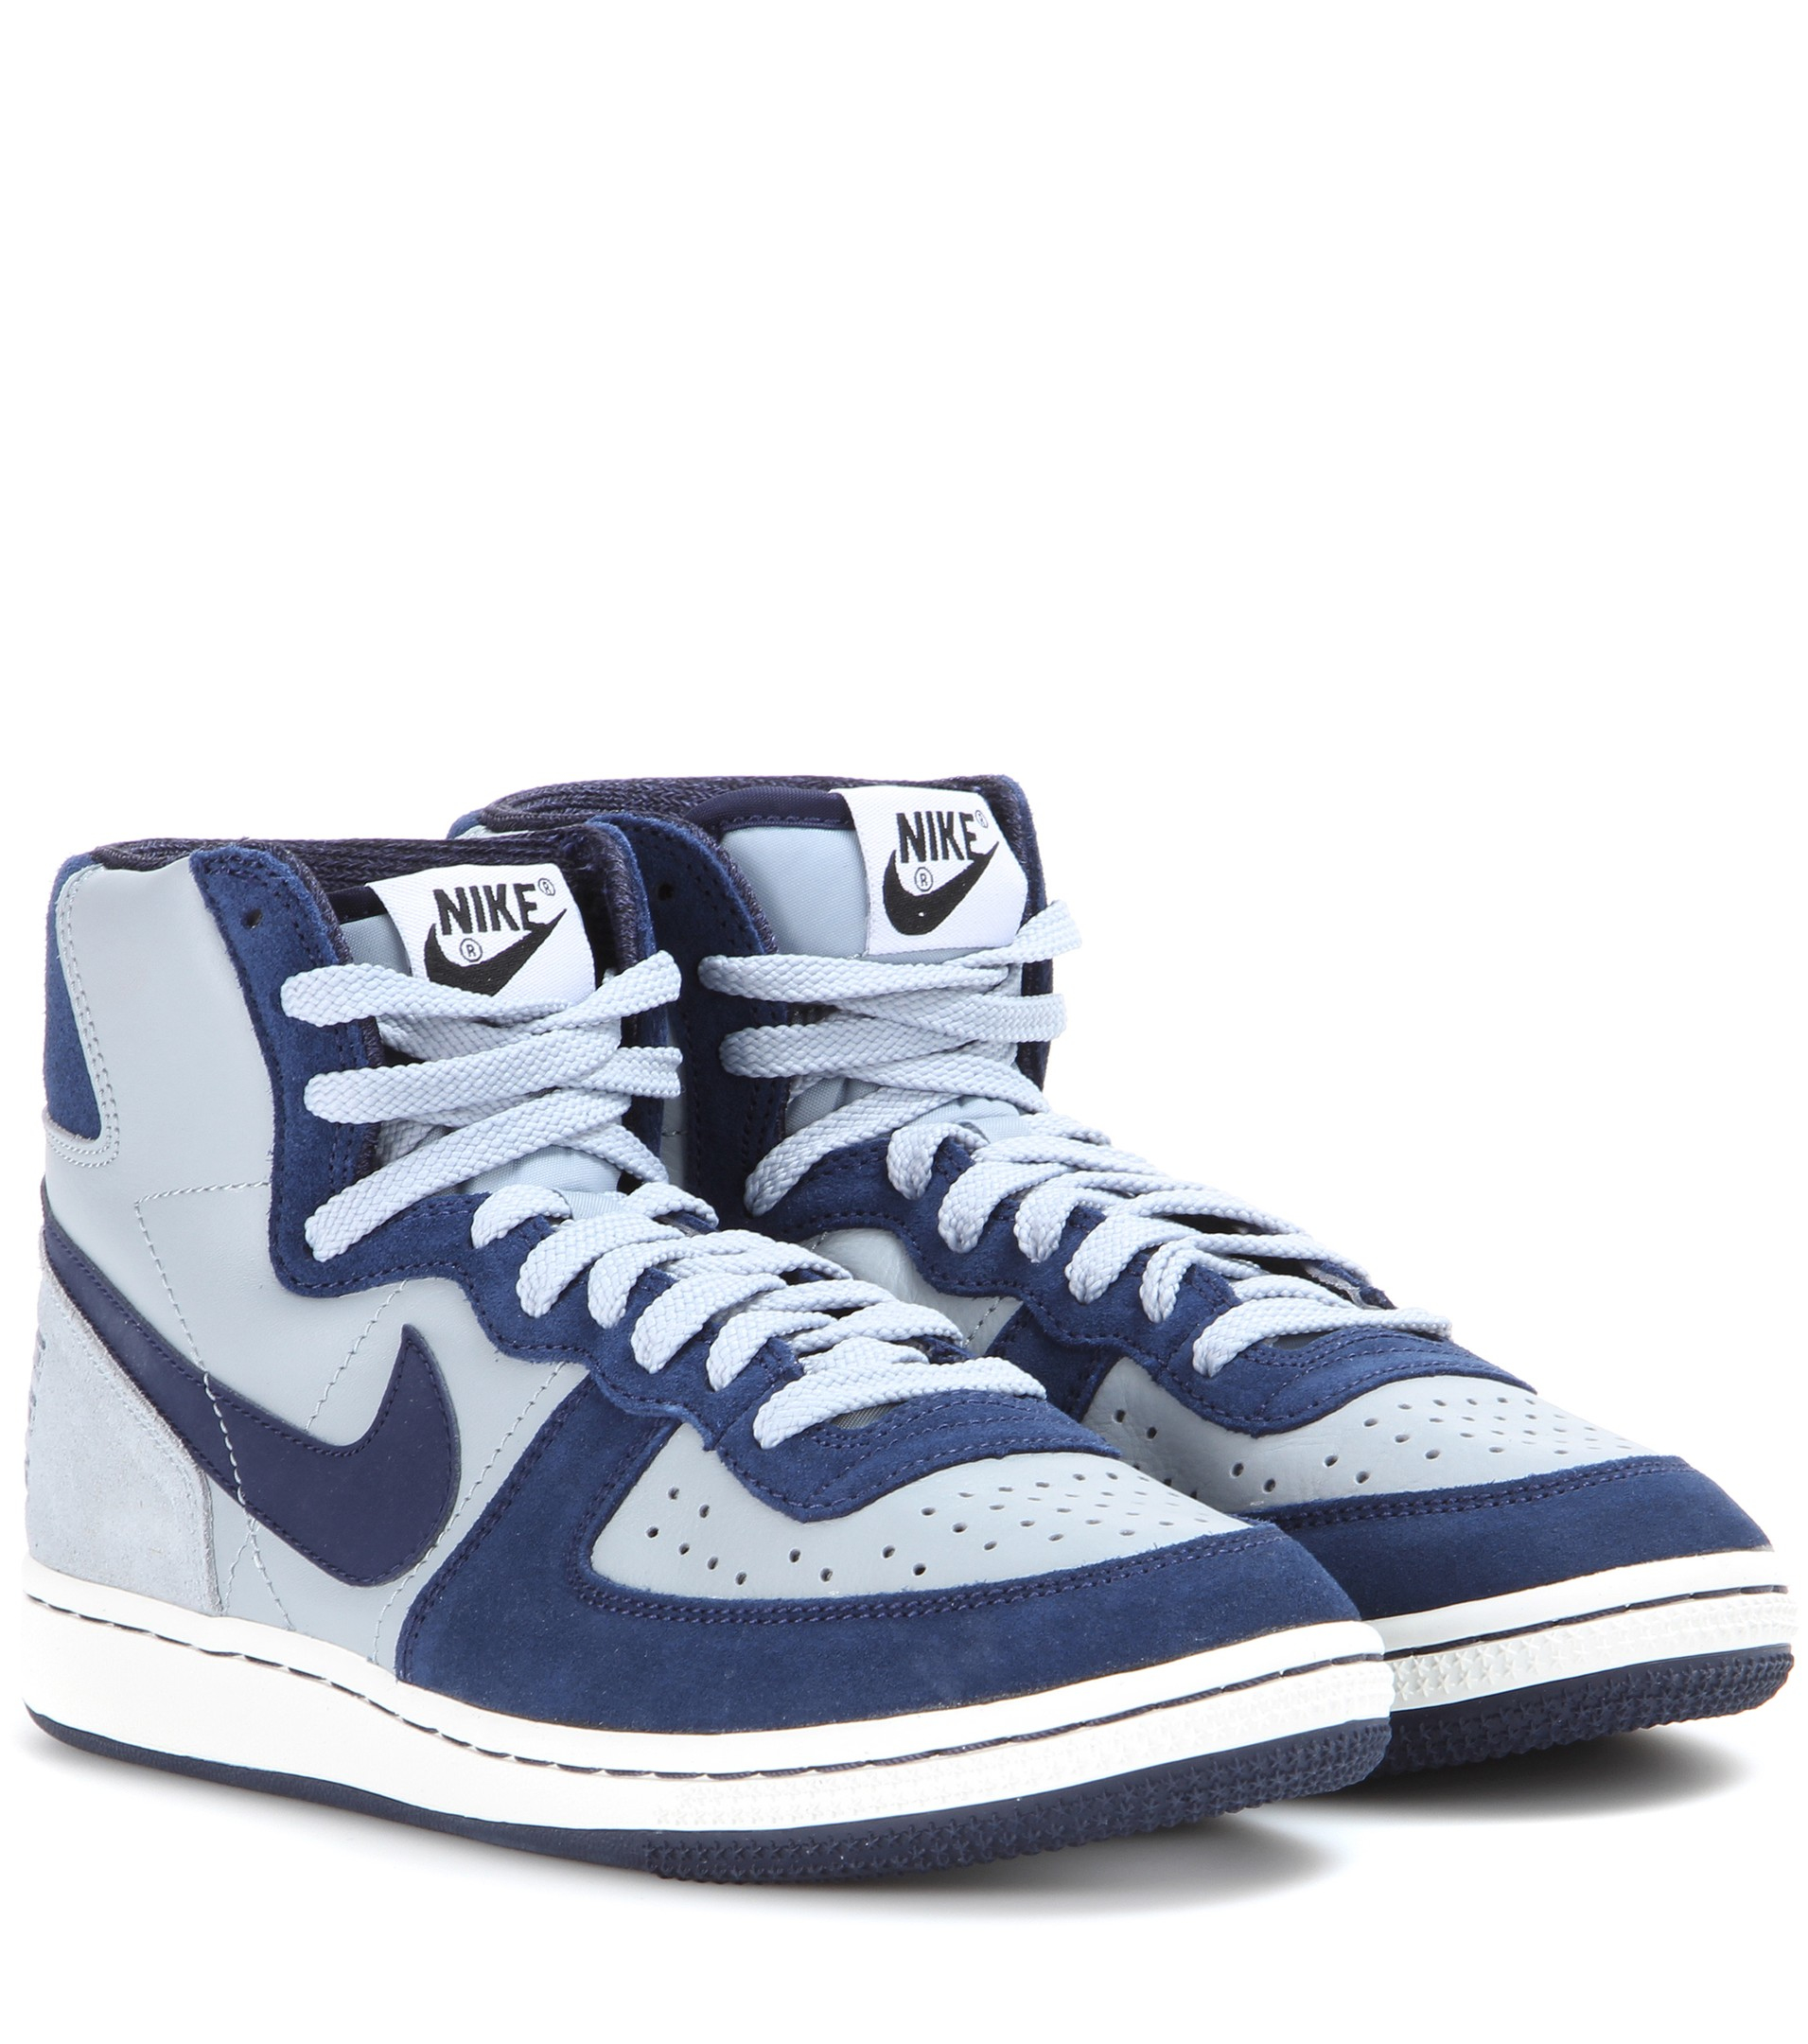 Lyst - Nike Terminator High Vintage Sneakers in Blue